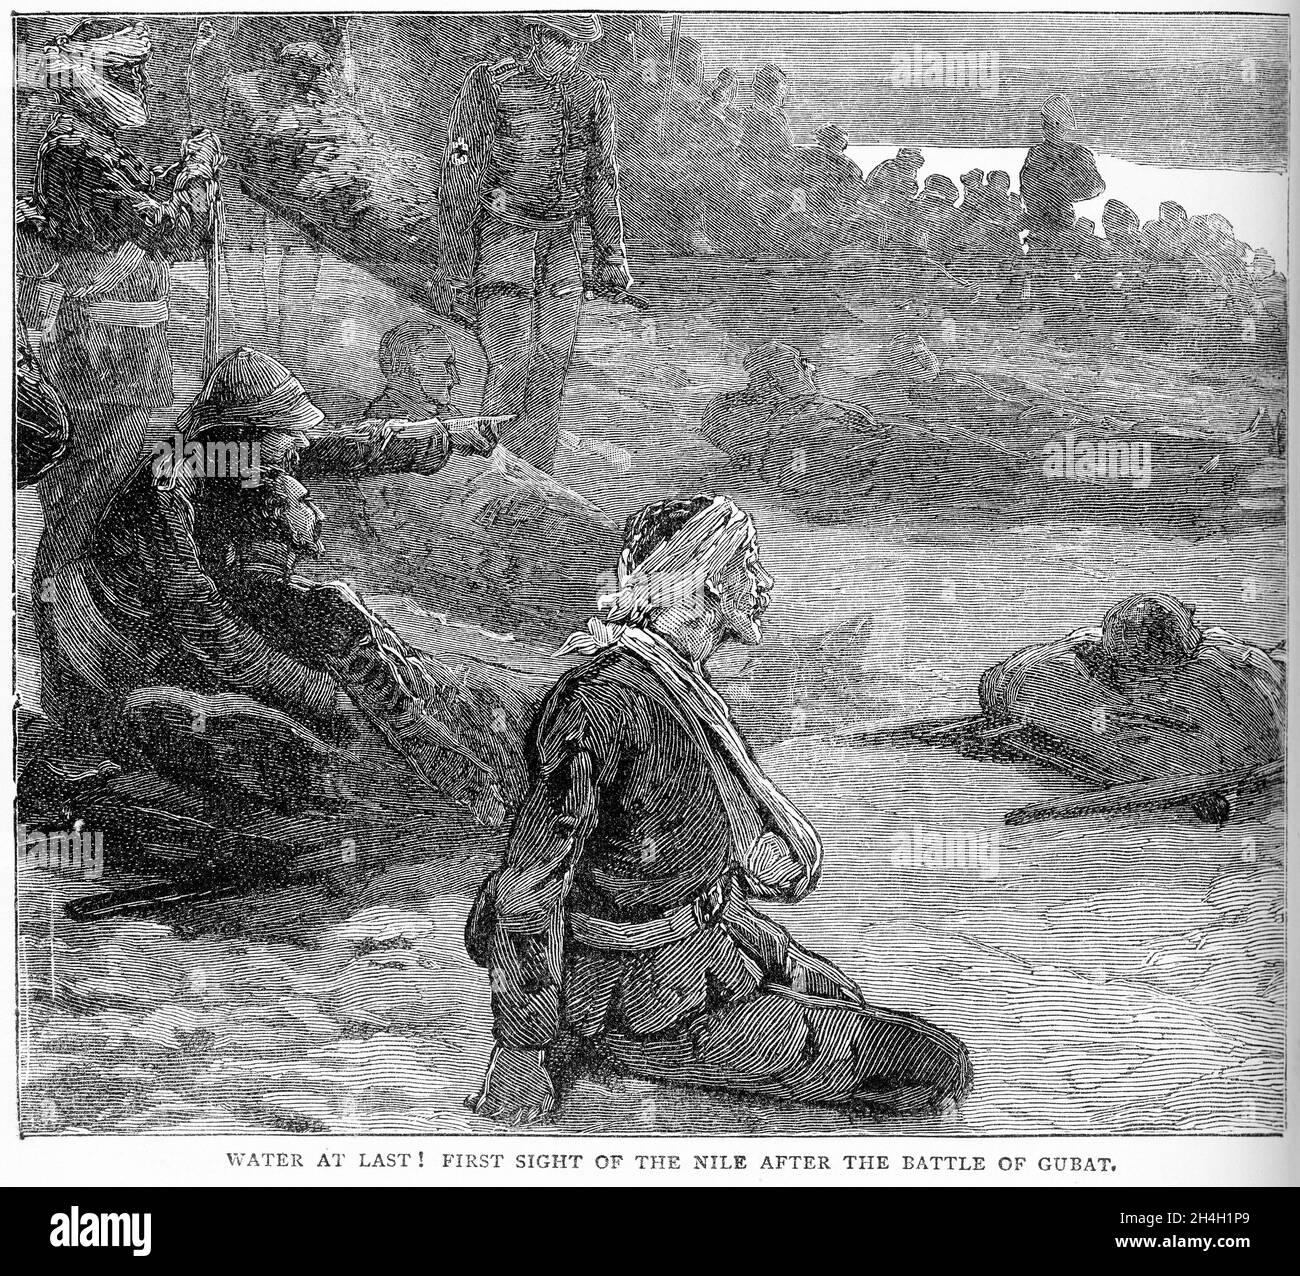 Gravur des Endes der Schlacht von Abu Kruu (auch bekannt als Schlacht von Gubat) Teil der Kampagne des britischen Sudan. Es wurde am 19. Januar 1885, zwei Tage nach der Schlacht von Abu Klea, zwischen den Briten und den Mahdisten ausgetragen. Stockfoto